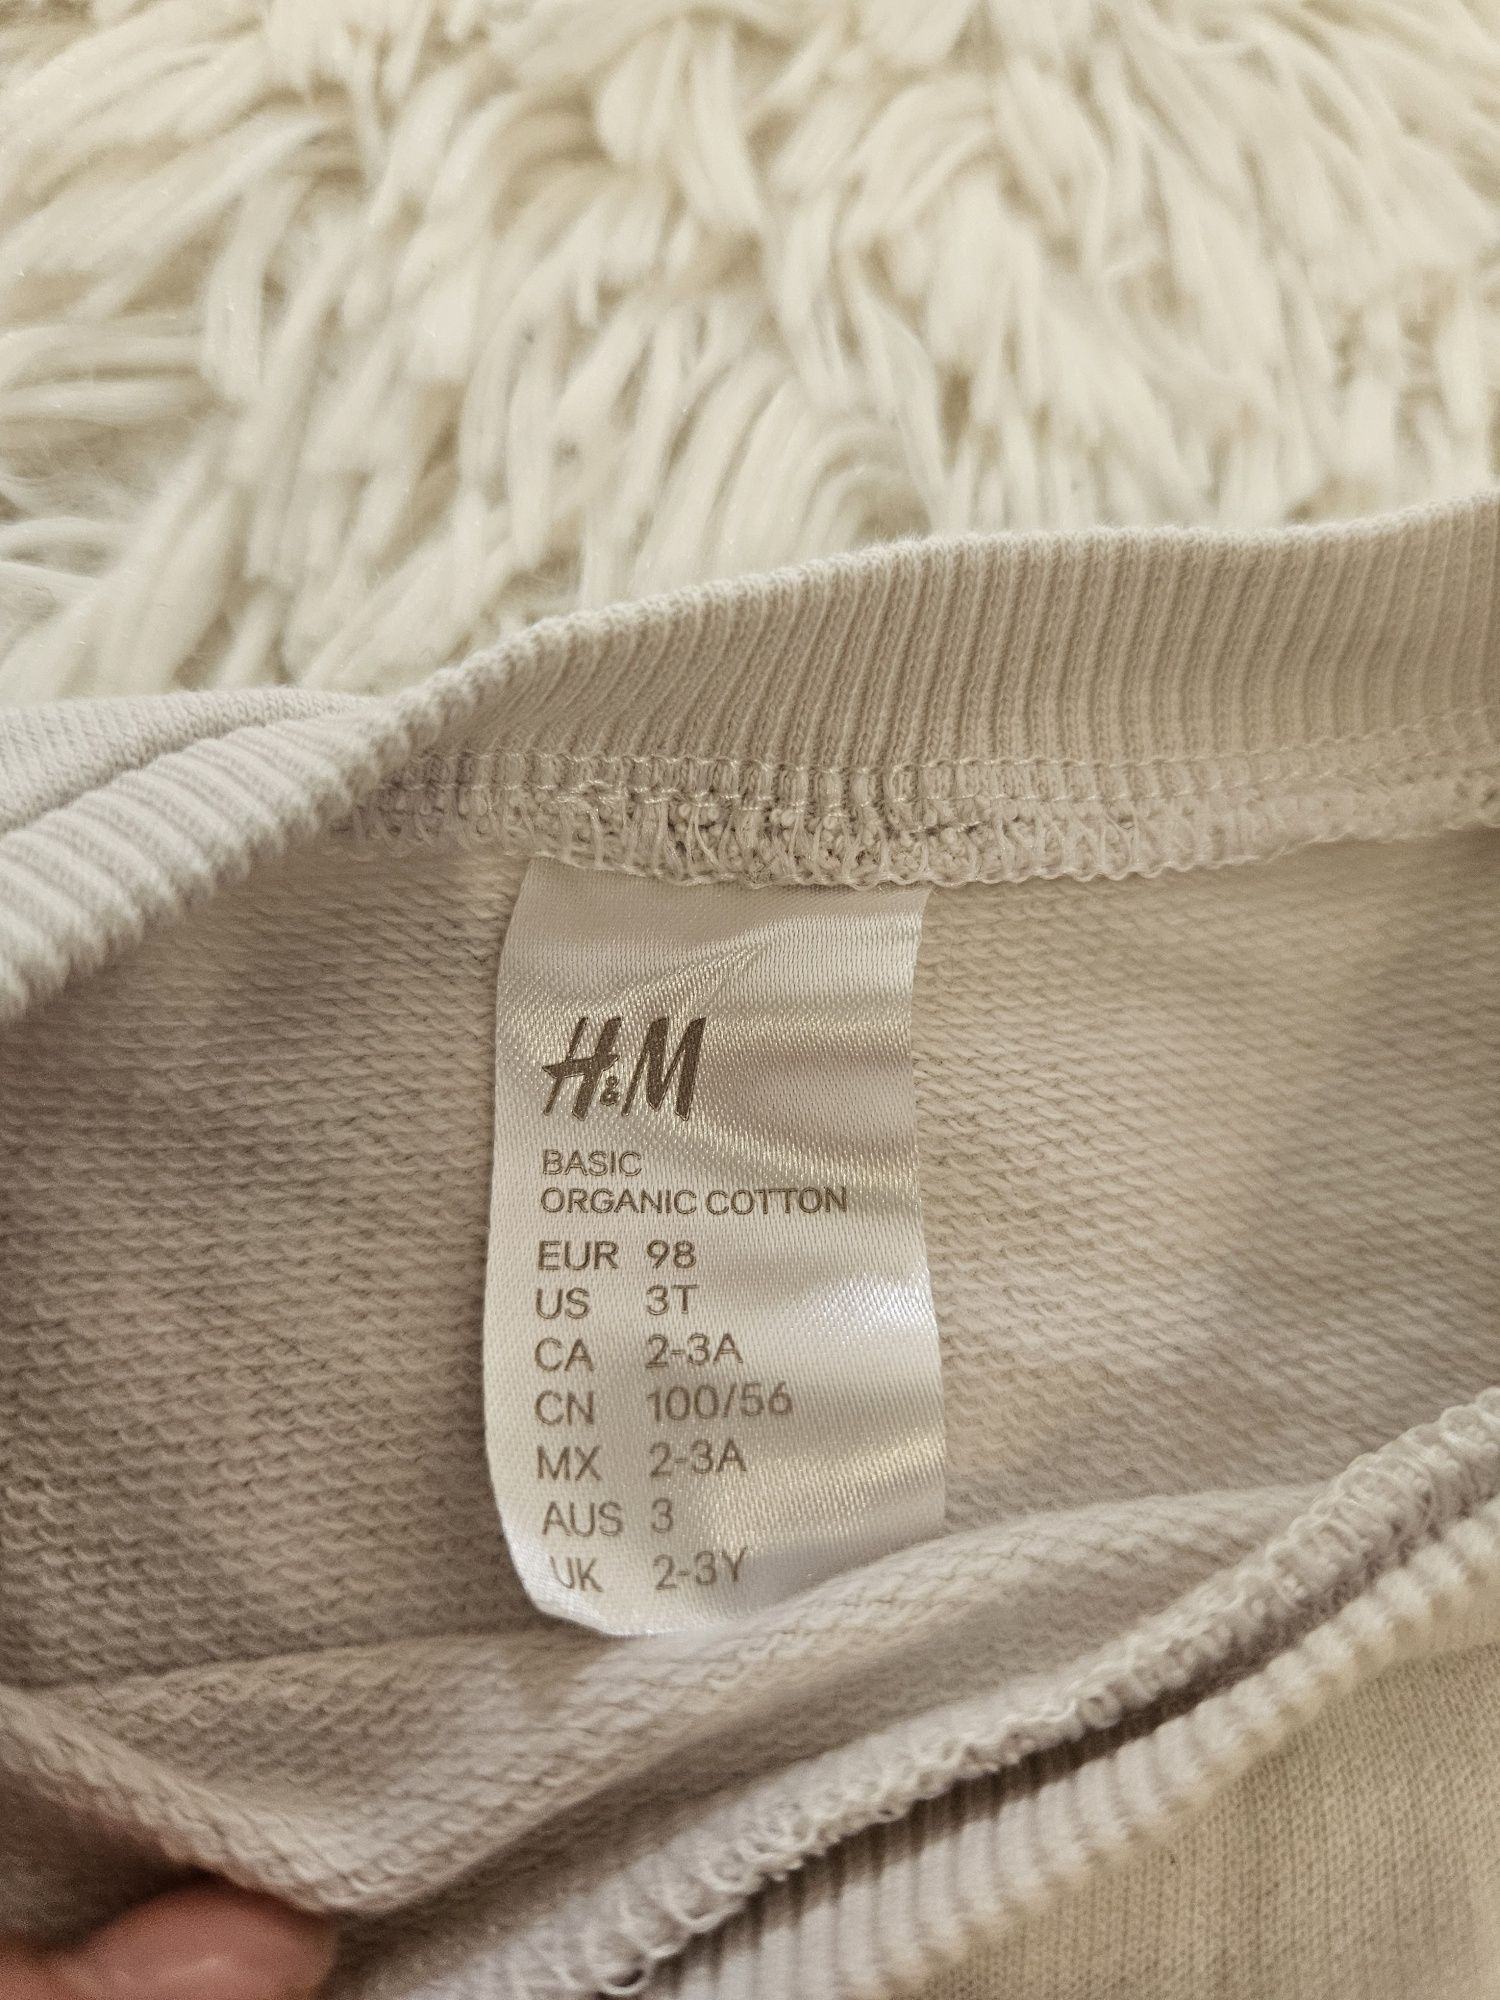 Bluza de jerseu cu print cireșe
Marimea 98
H&M
Stare impecabila
28 lei